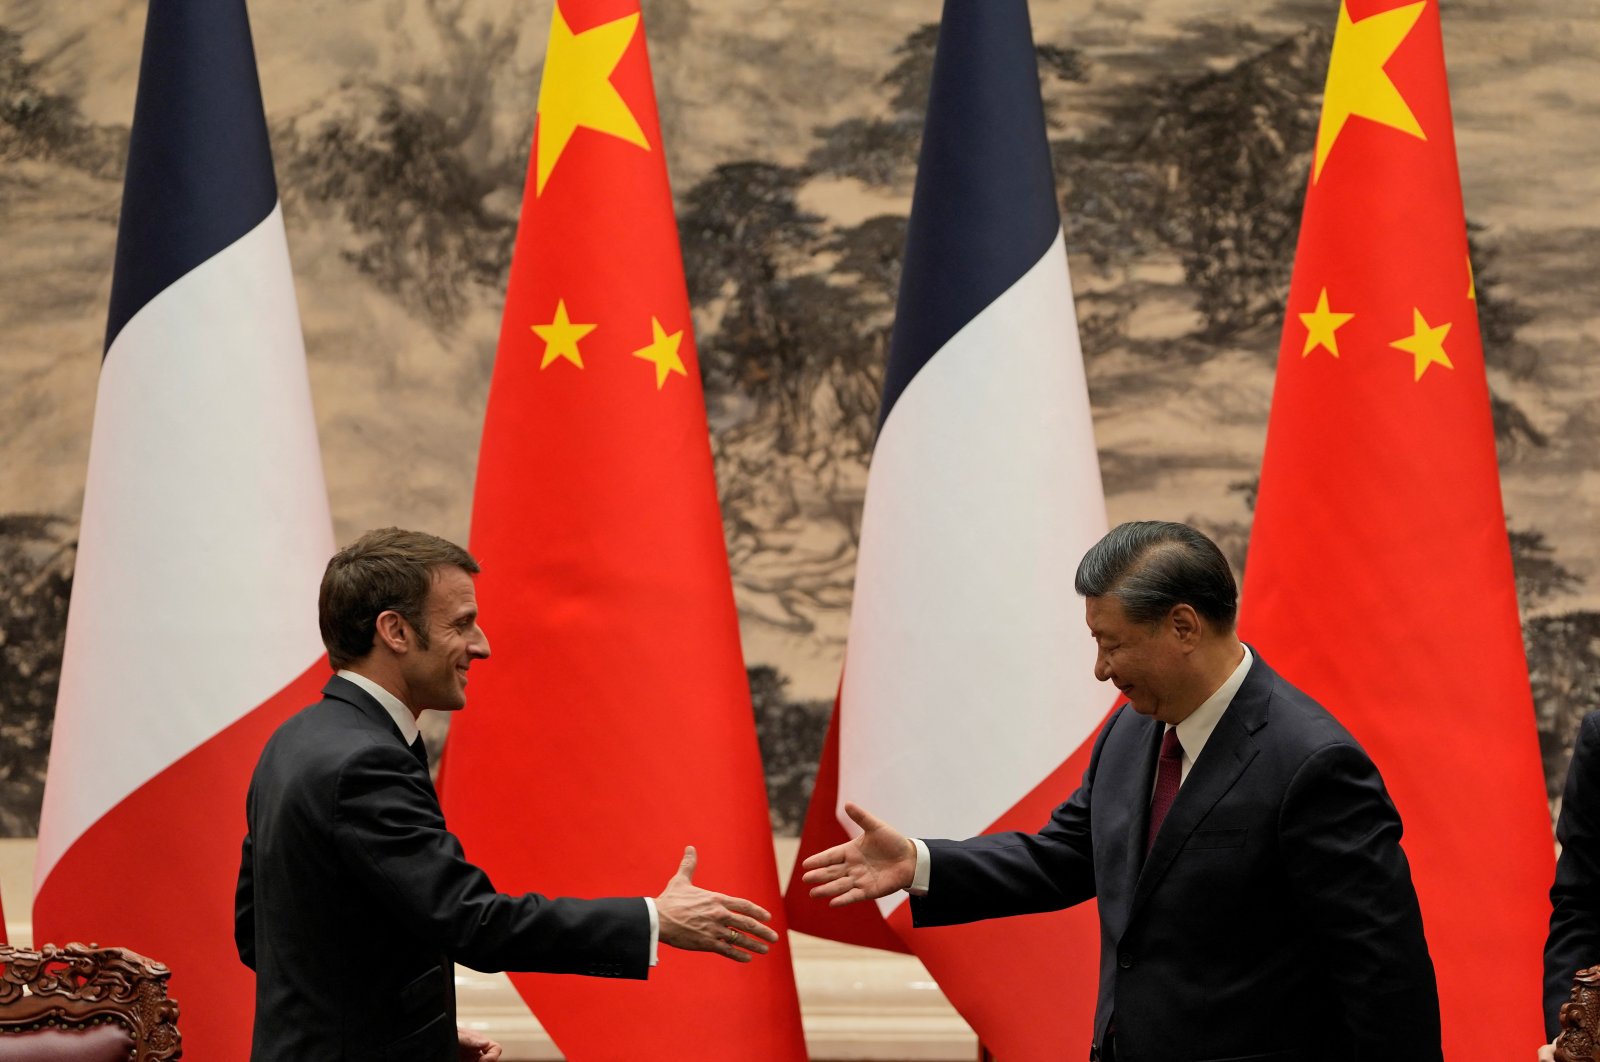 Sikap Prancis di Taiwan: Macron mendukung ‘status quo’